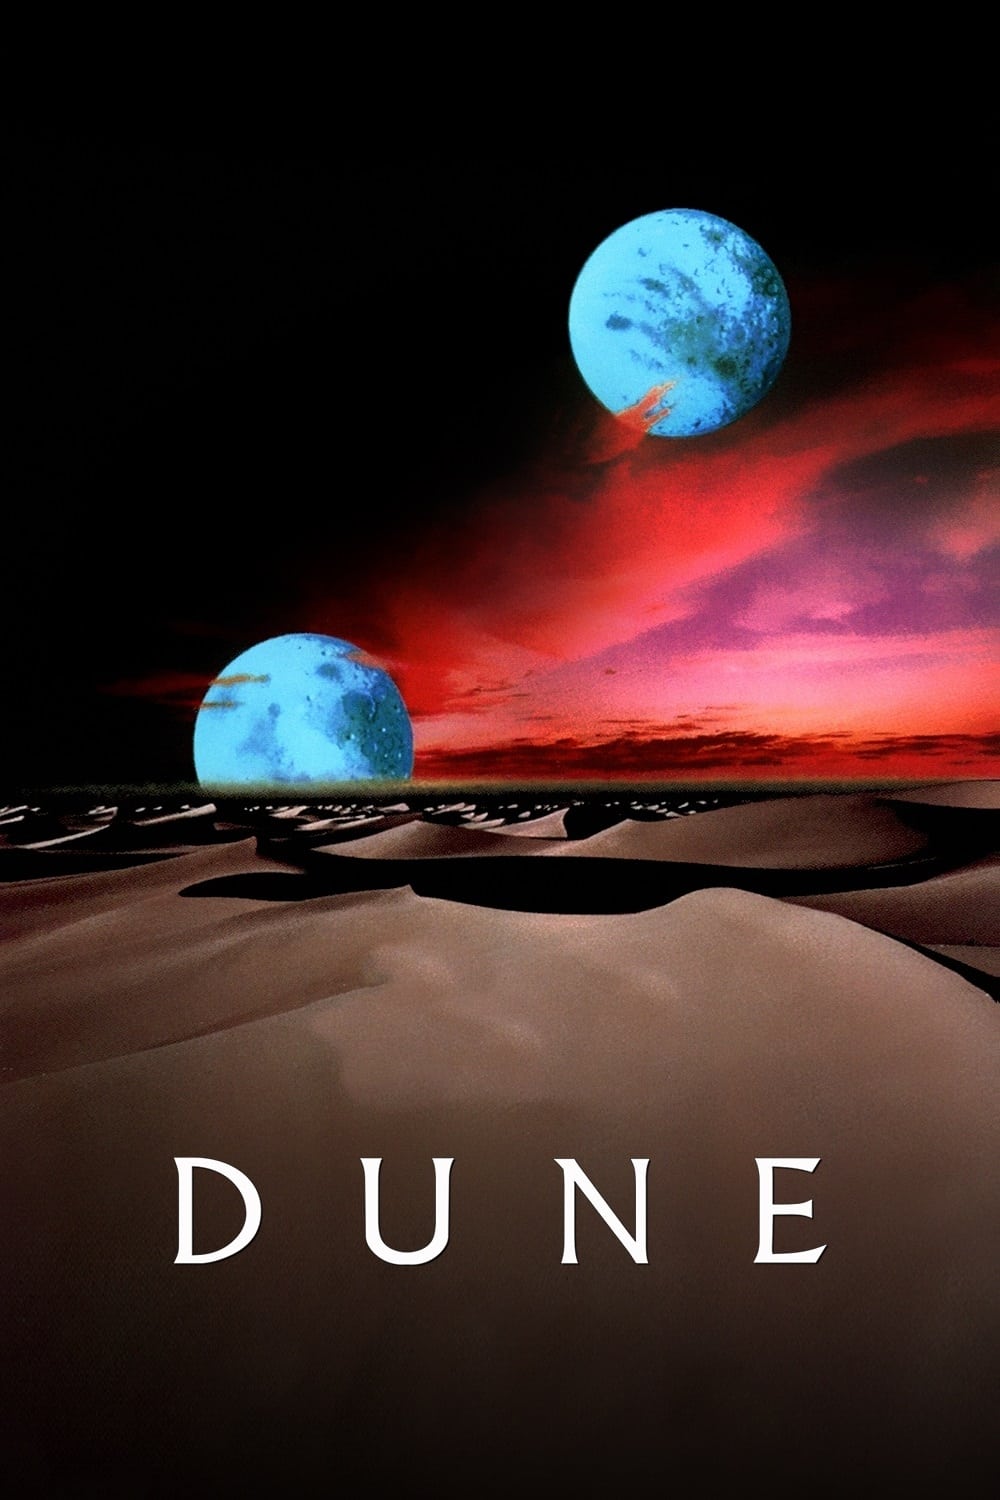 Der Wüstenplanet (1984)